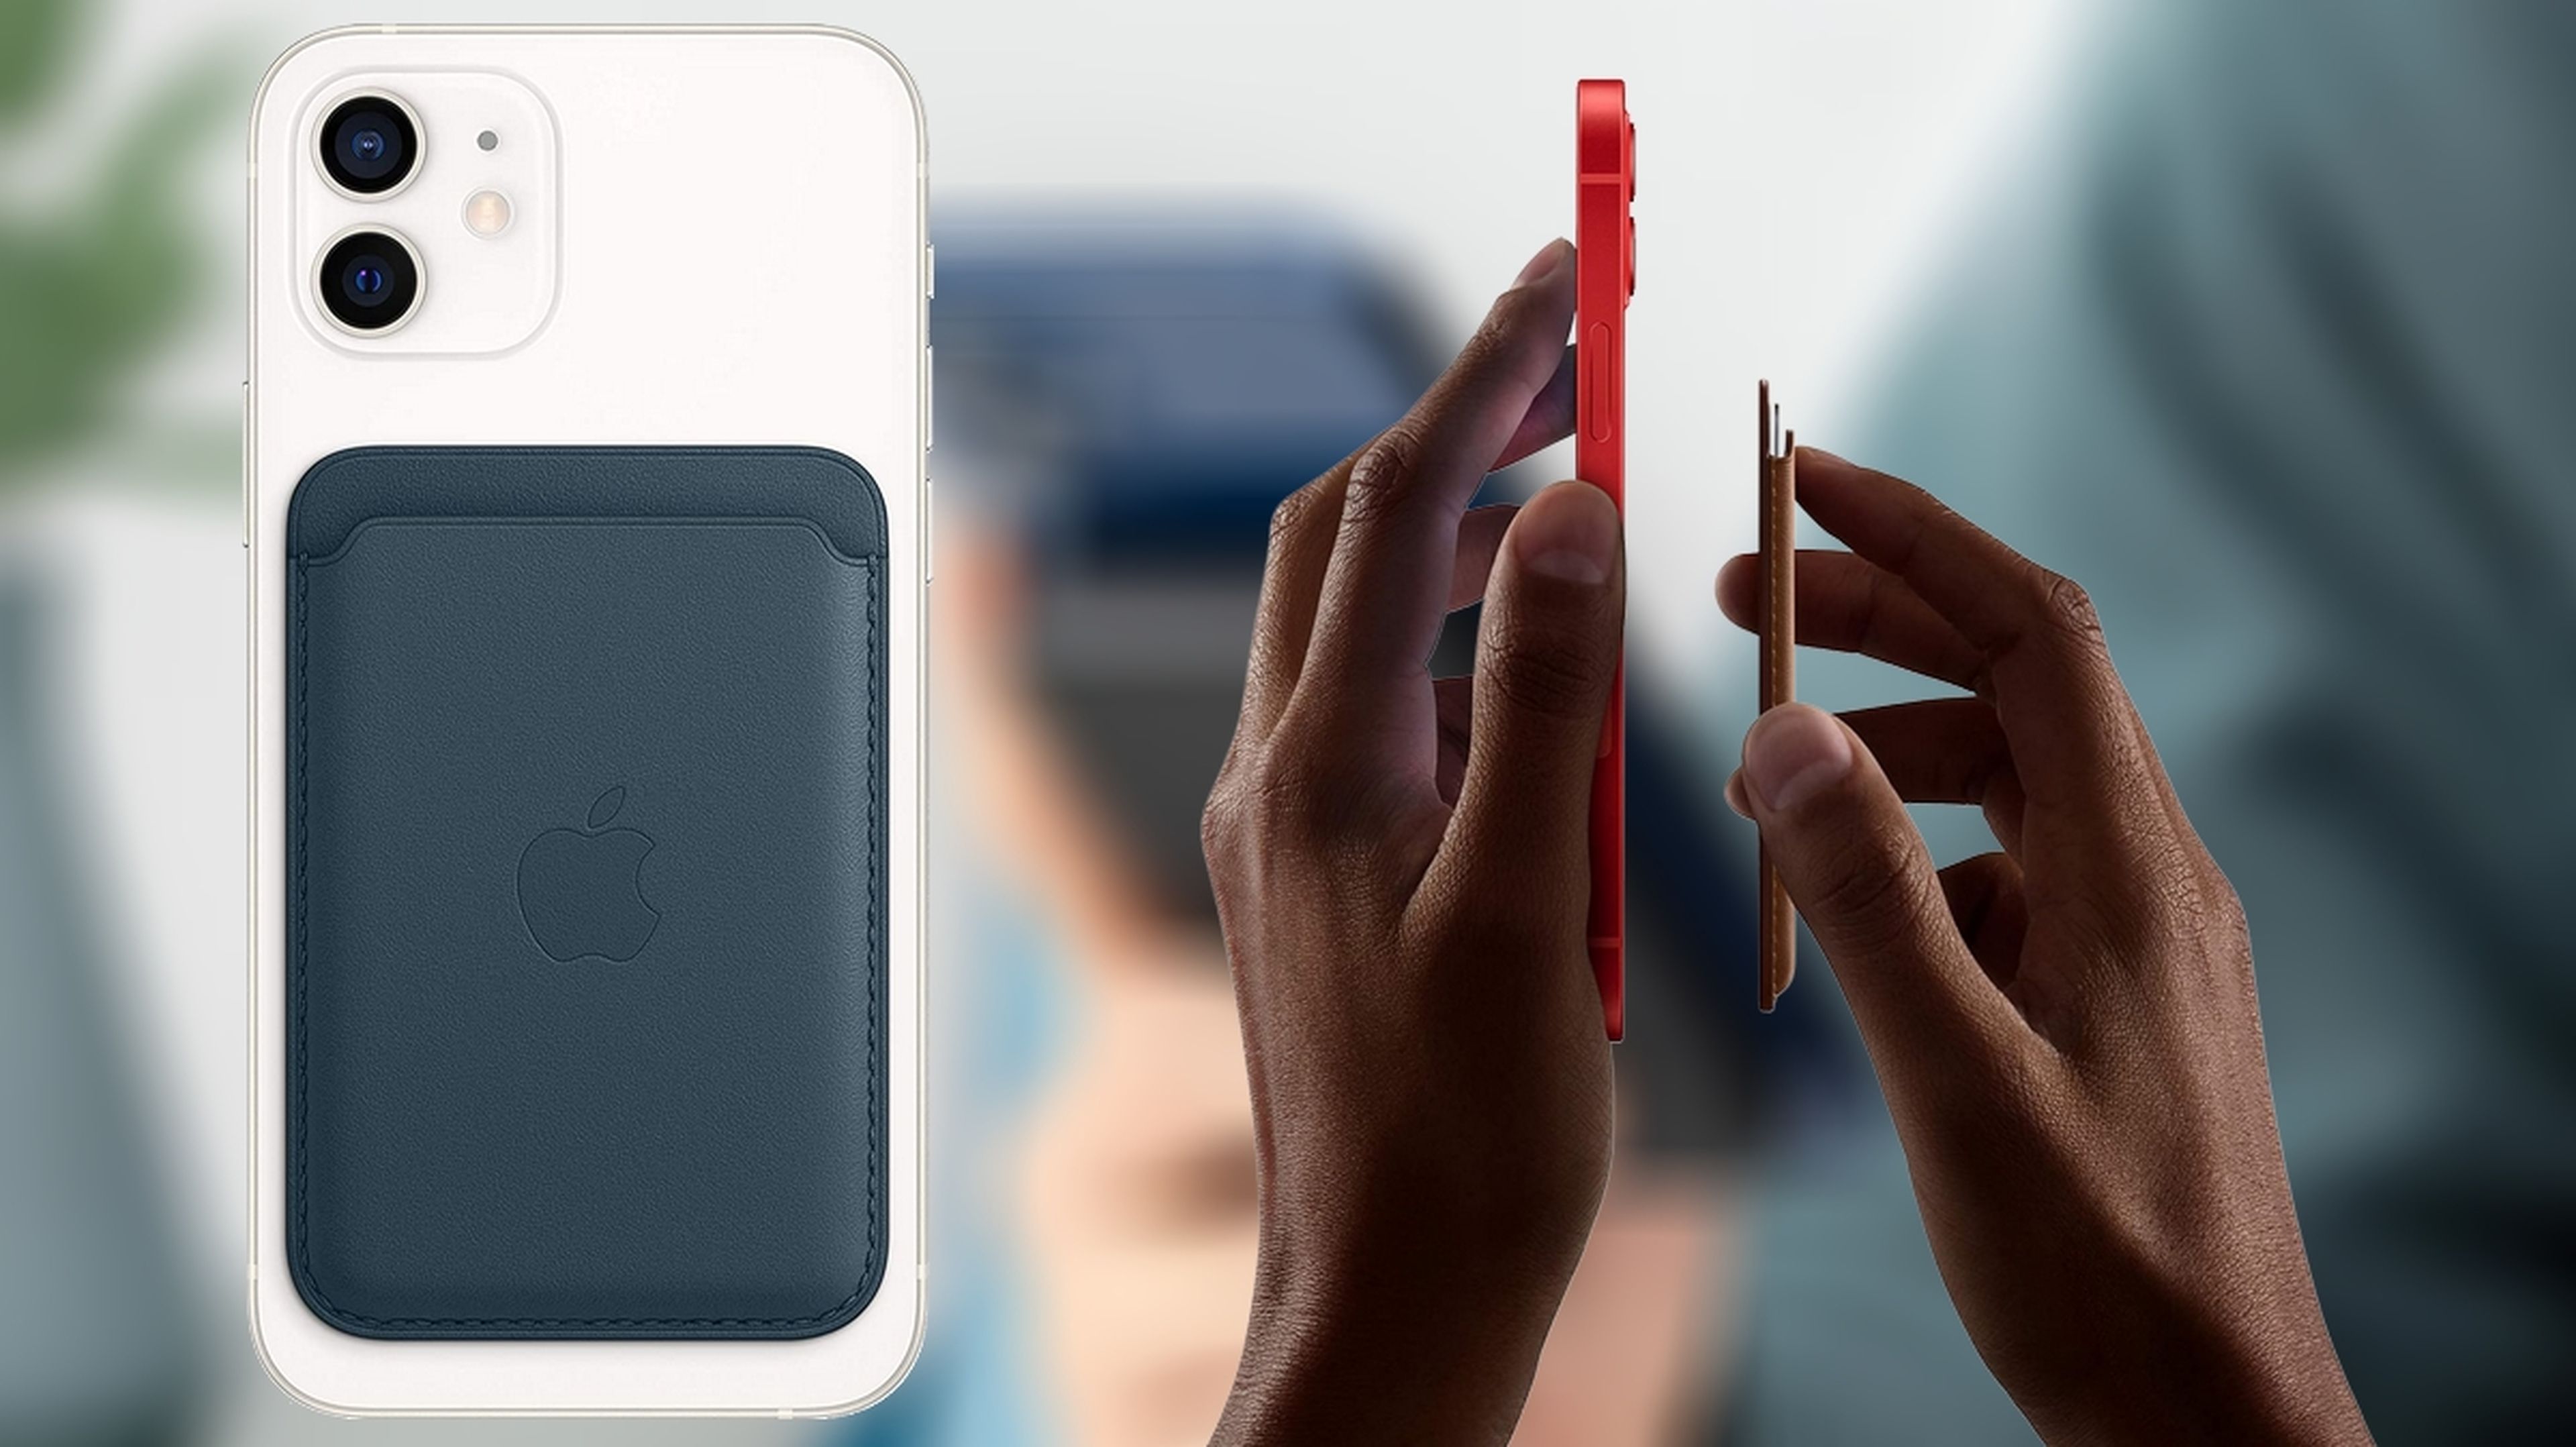 Billetera de piel con MagSafe para el Apple iPhone